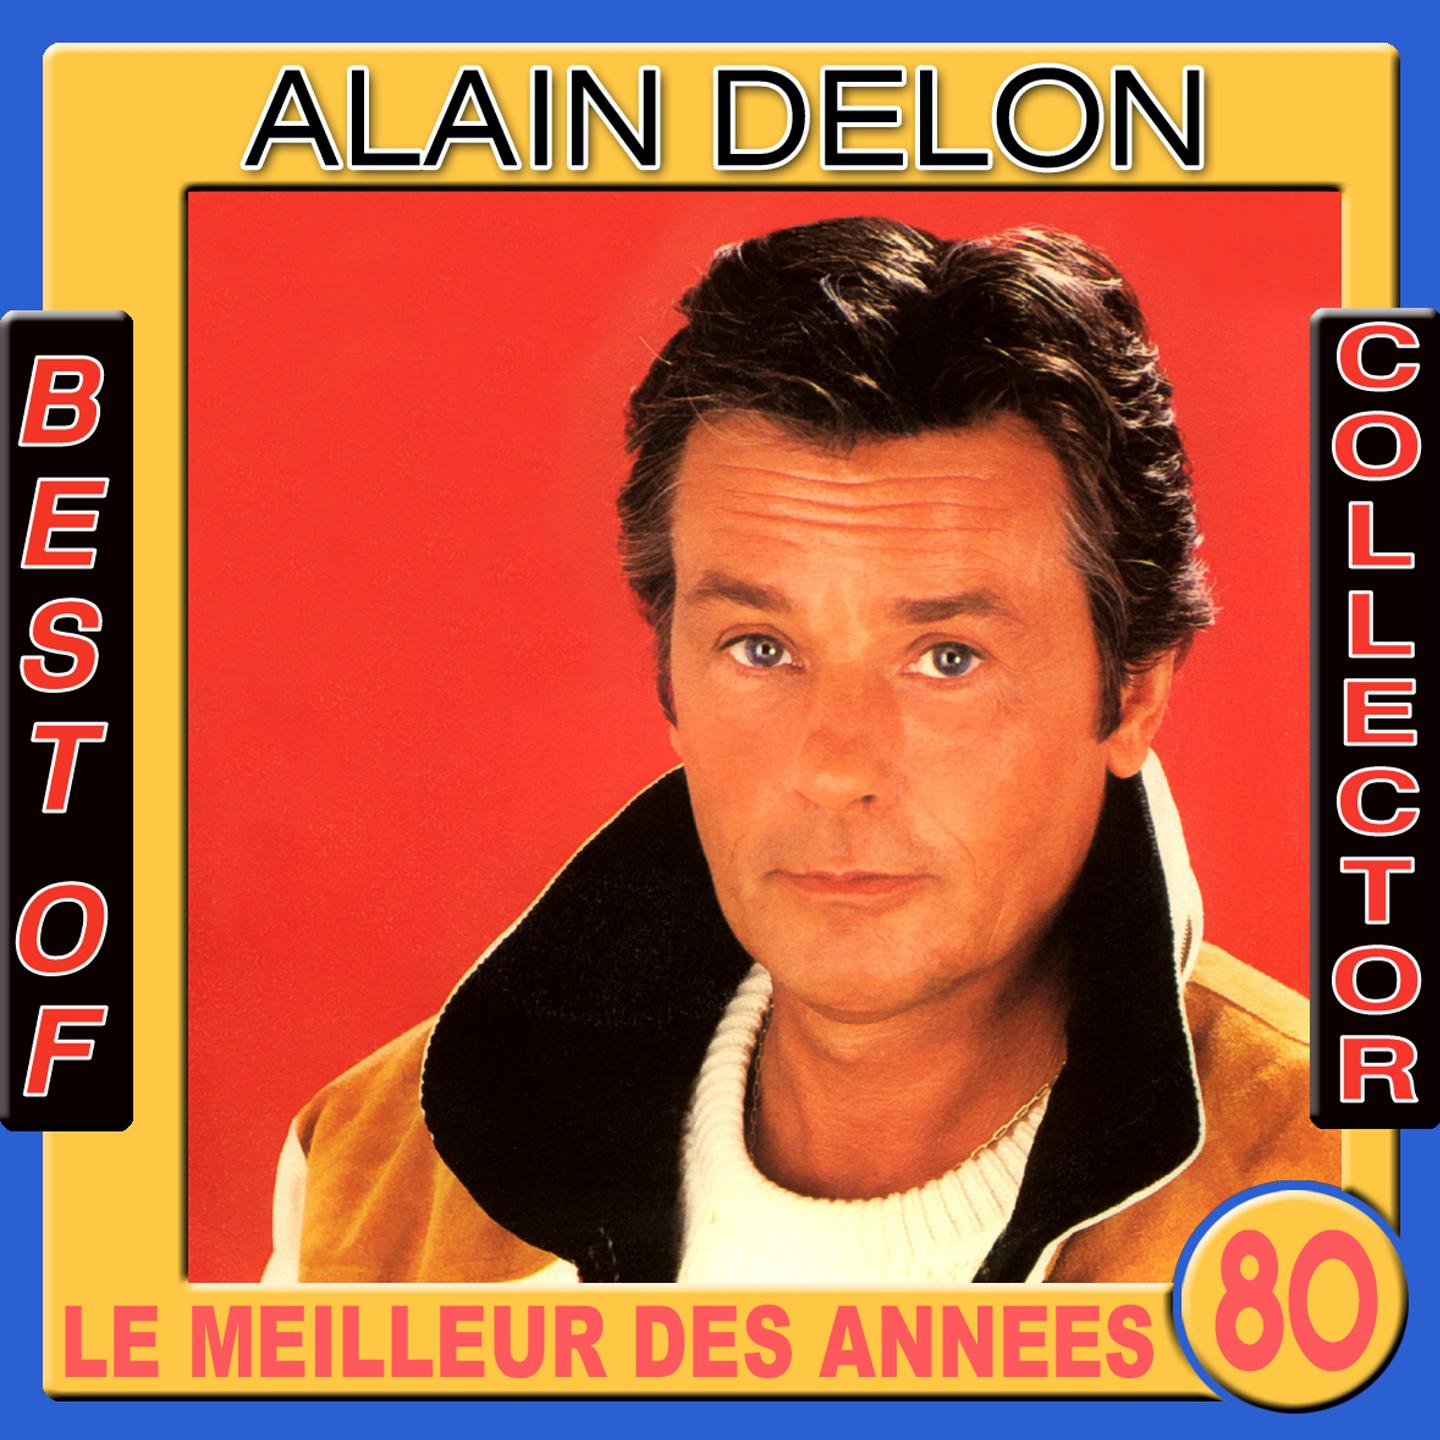 Best of Alain Delon Collector Le meilleur des anne es 80